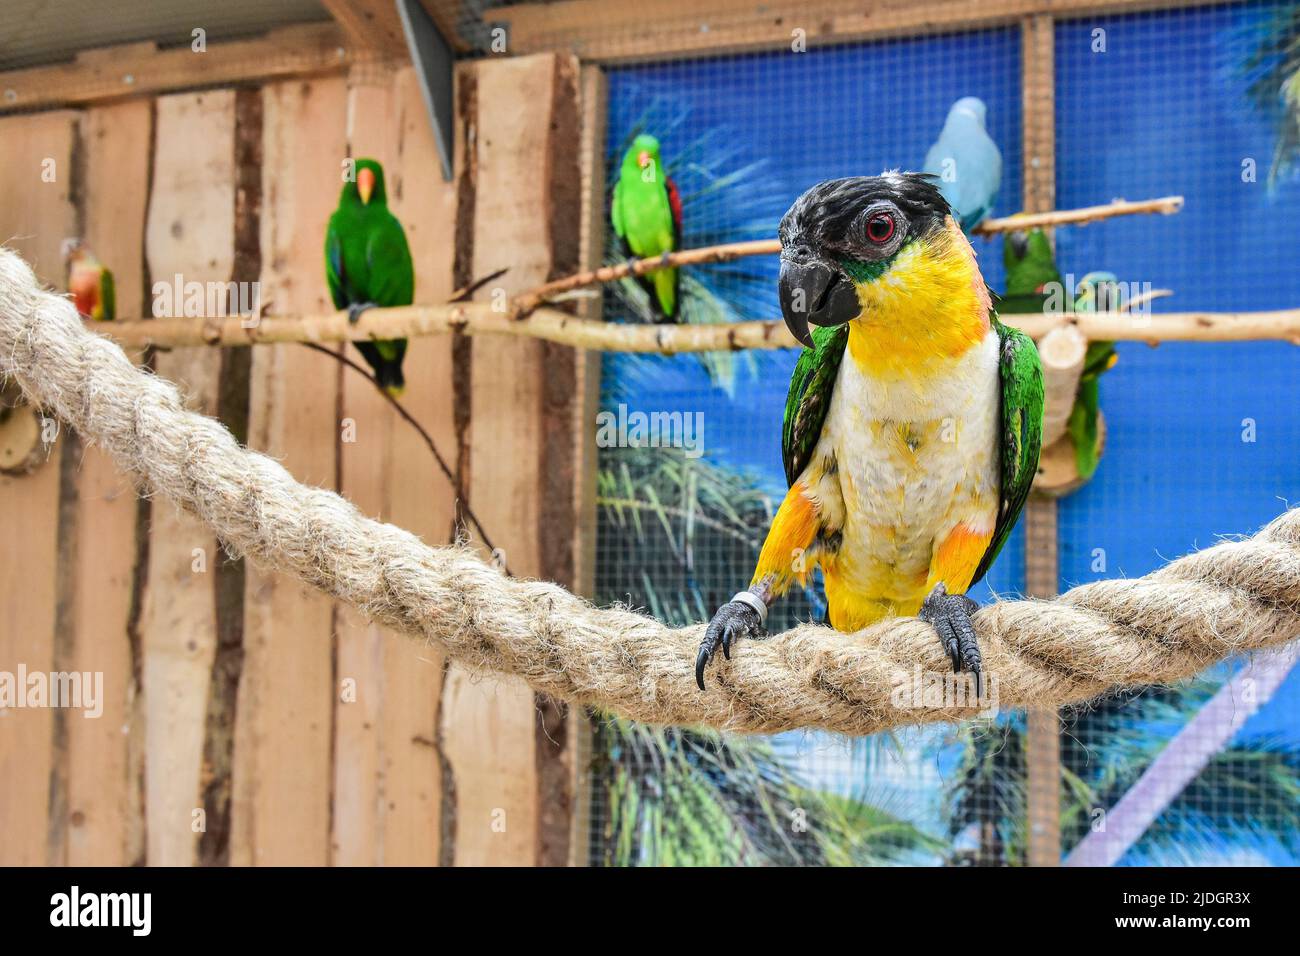 magnifiques perroquets colorés, oiseaux exotiques Banque D'Images